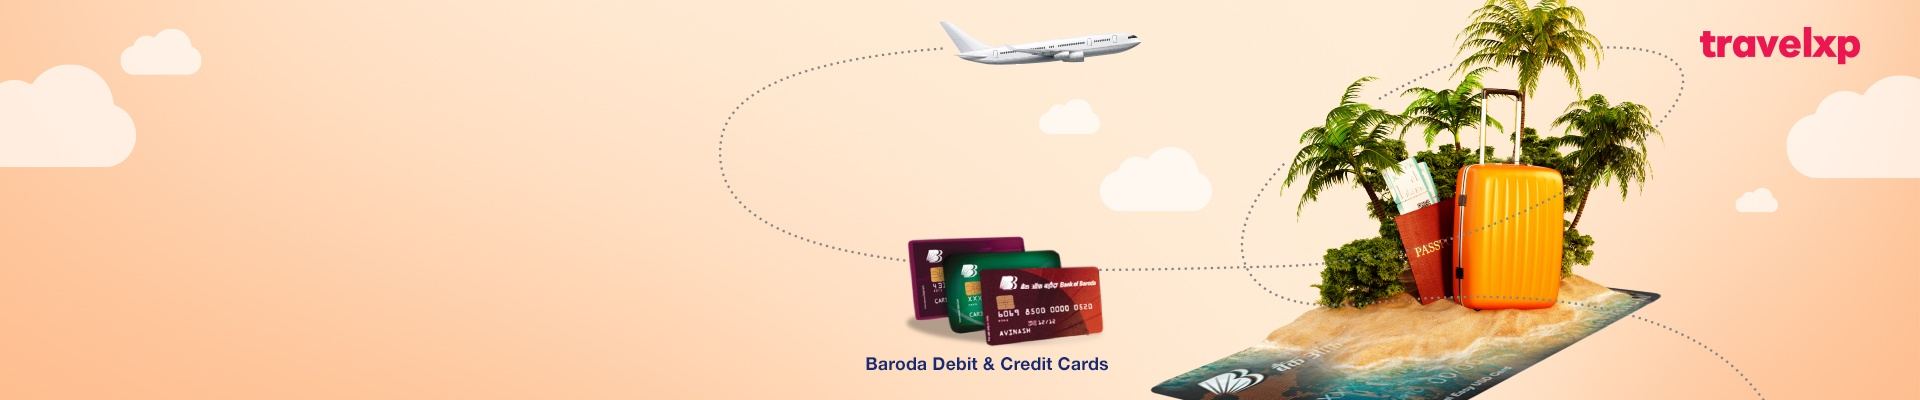 Debit Card travel xp Offers